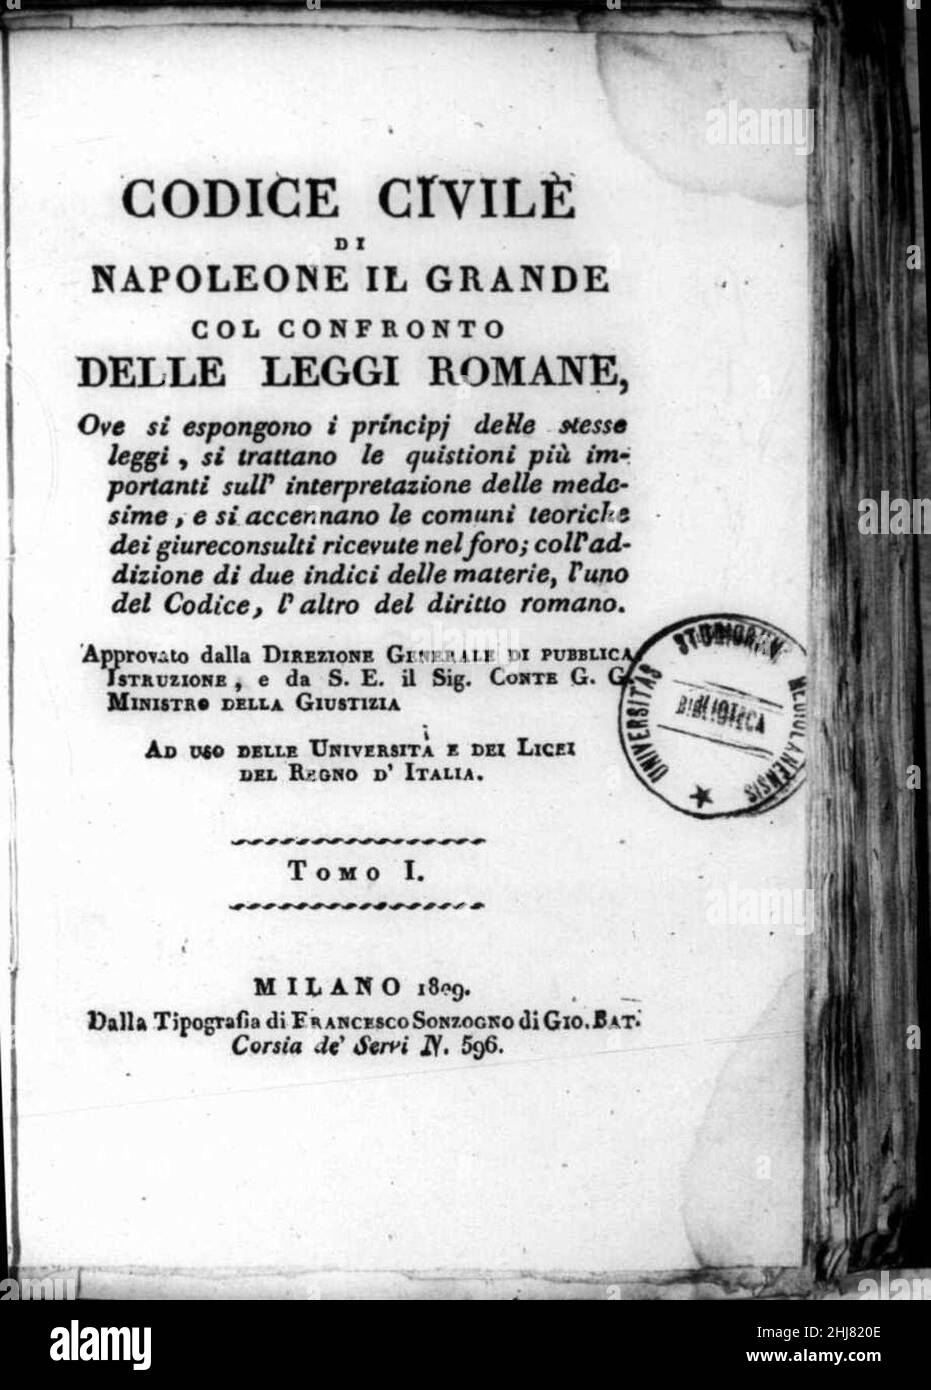 Taglioni, Onofrio – Codice civile di Napoleone il Grande col confronto delle leggi romane, 1809 – BEIC 14446576. Stock Photo